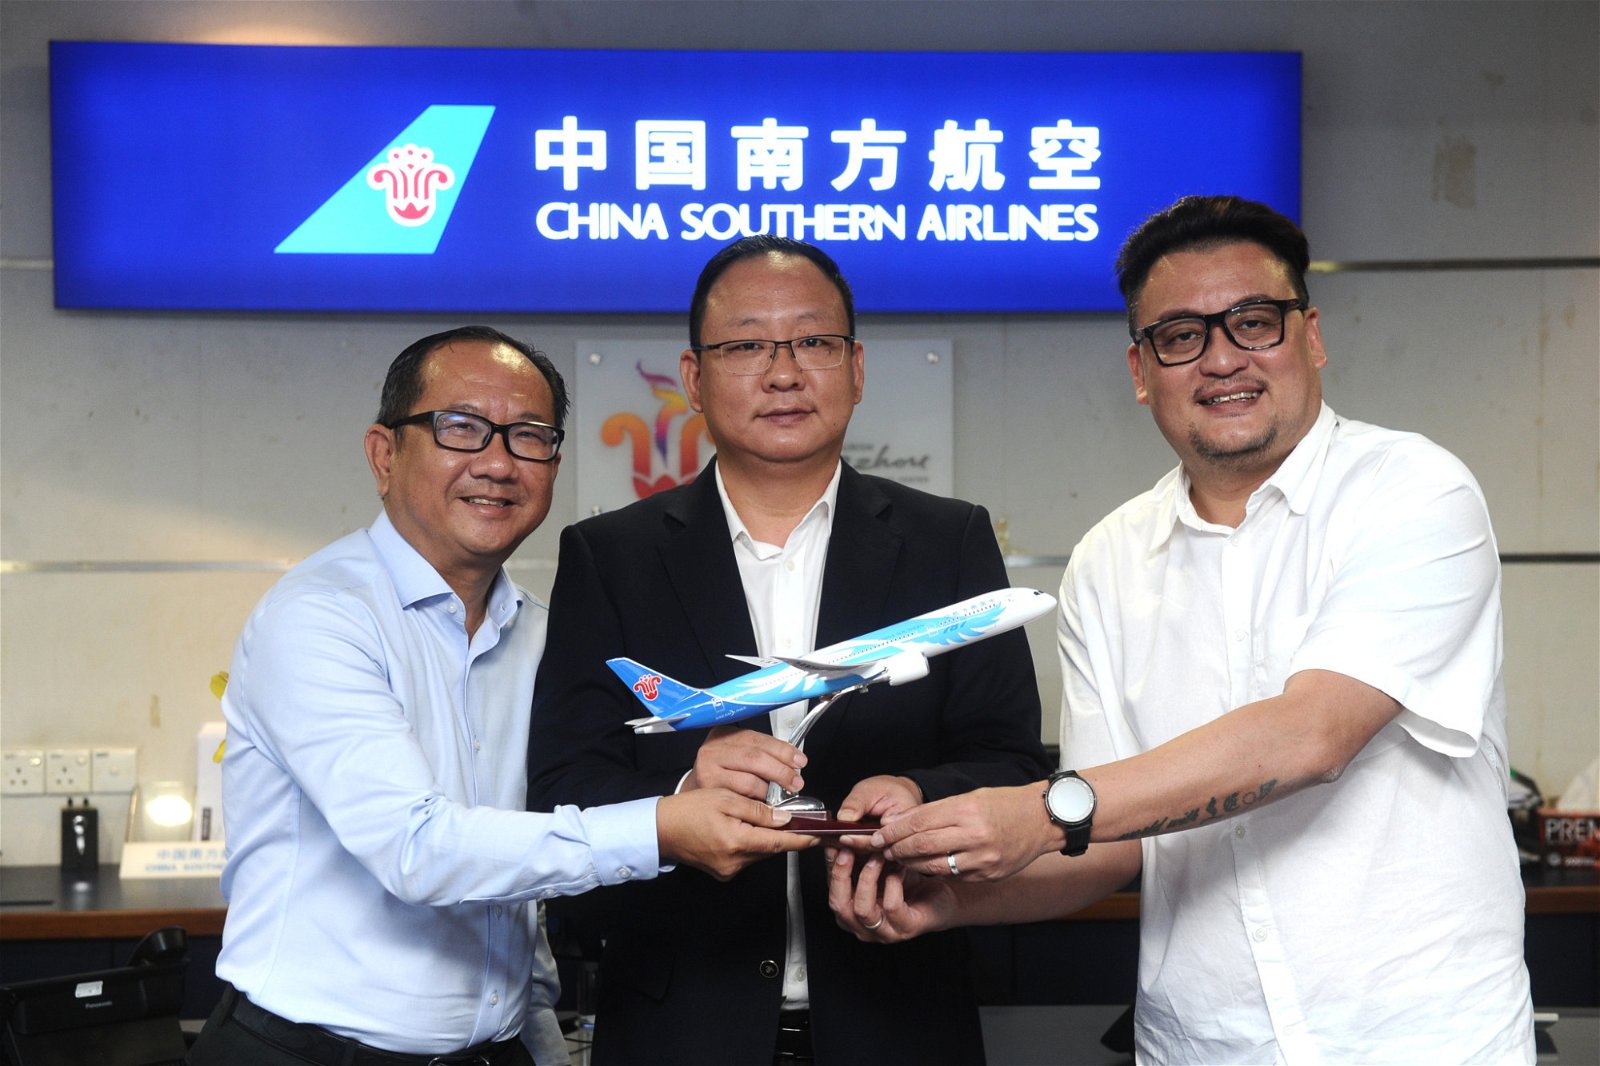 刘伟康（左起）、王旭和蔡明辉手握南航飞机模型，展示南航与马来西亚旅游业者间合作的默契。